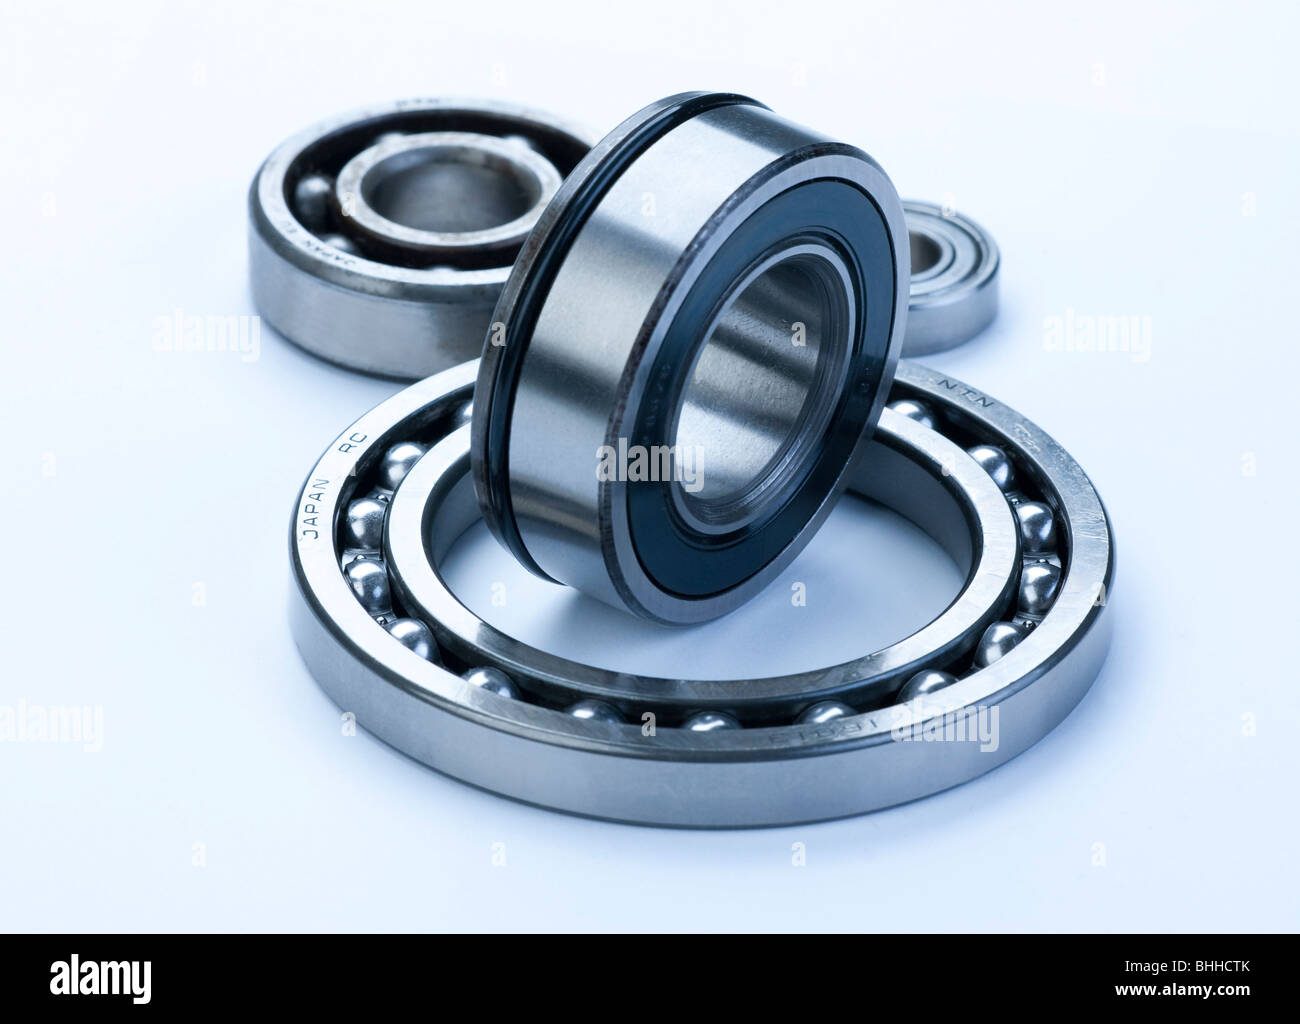 ball bearing units Stock Photo